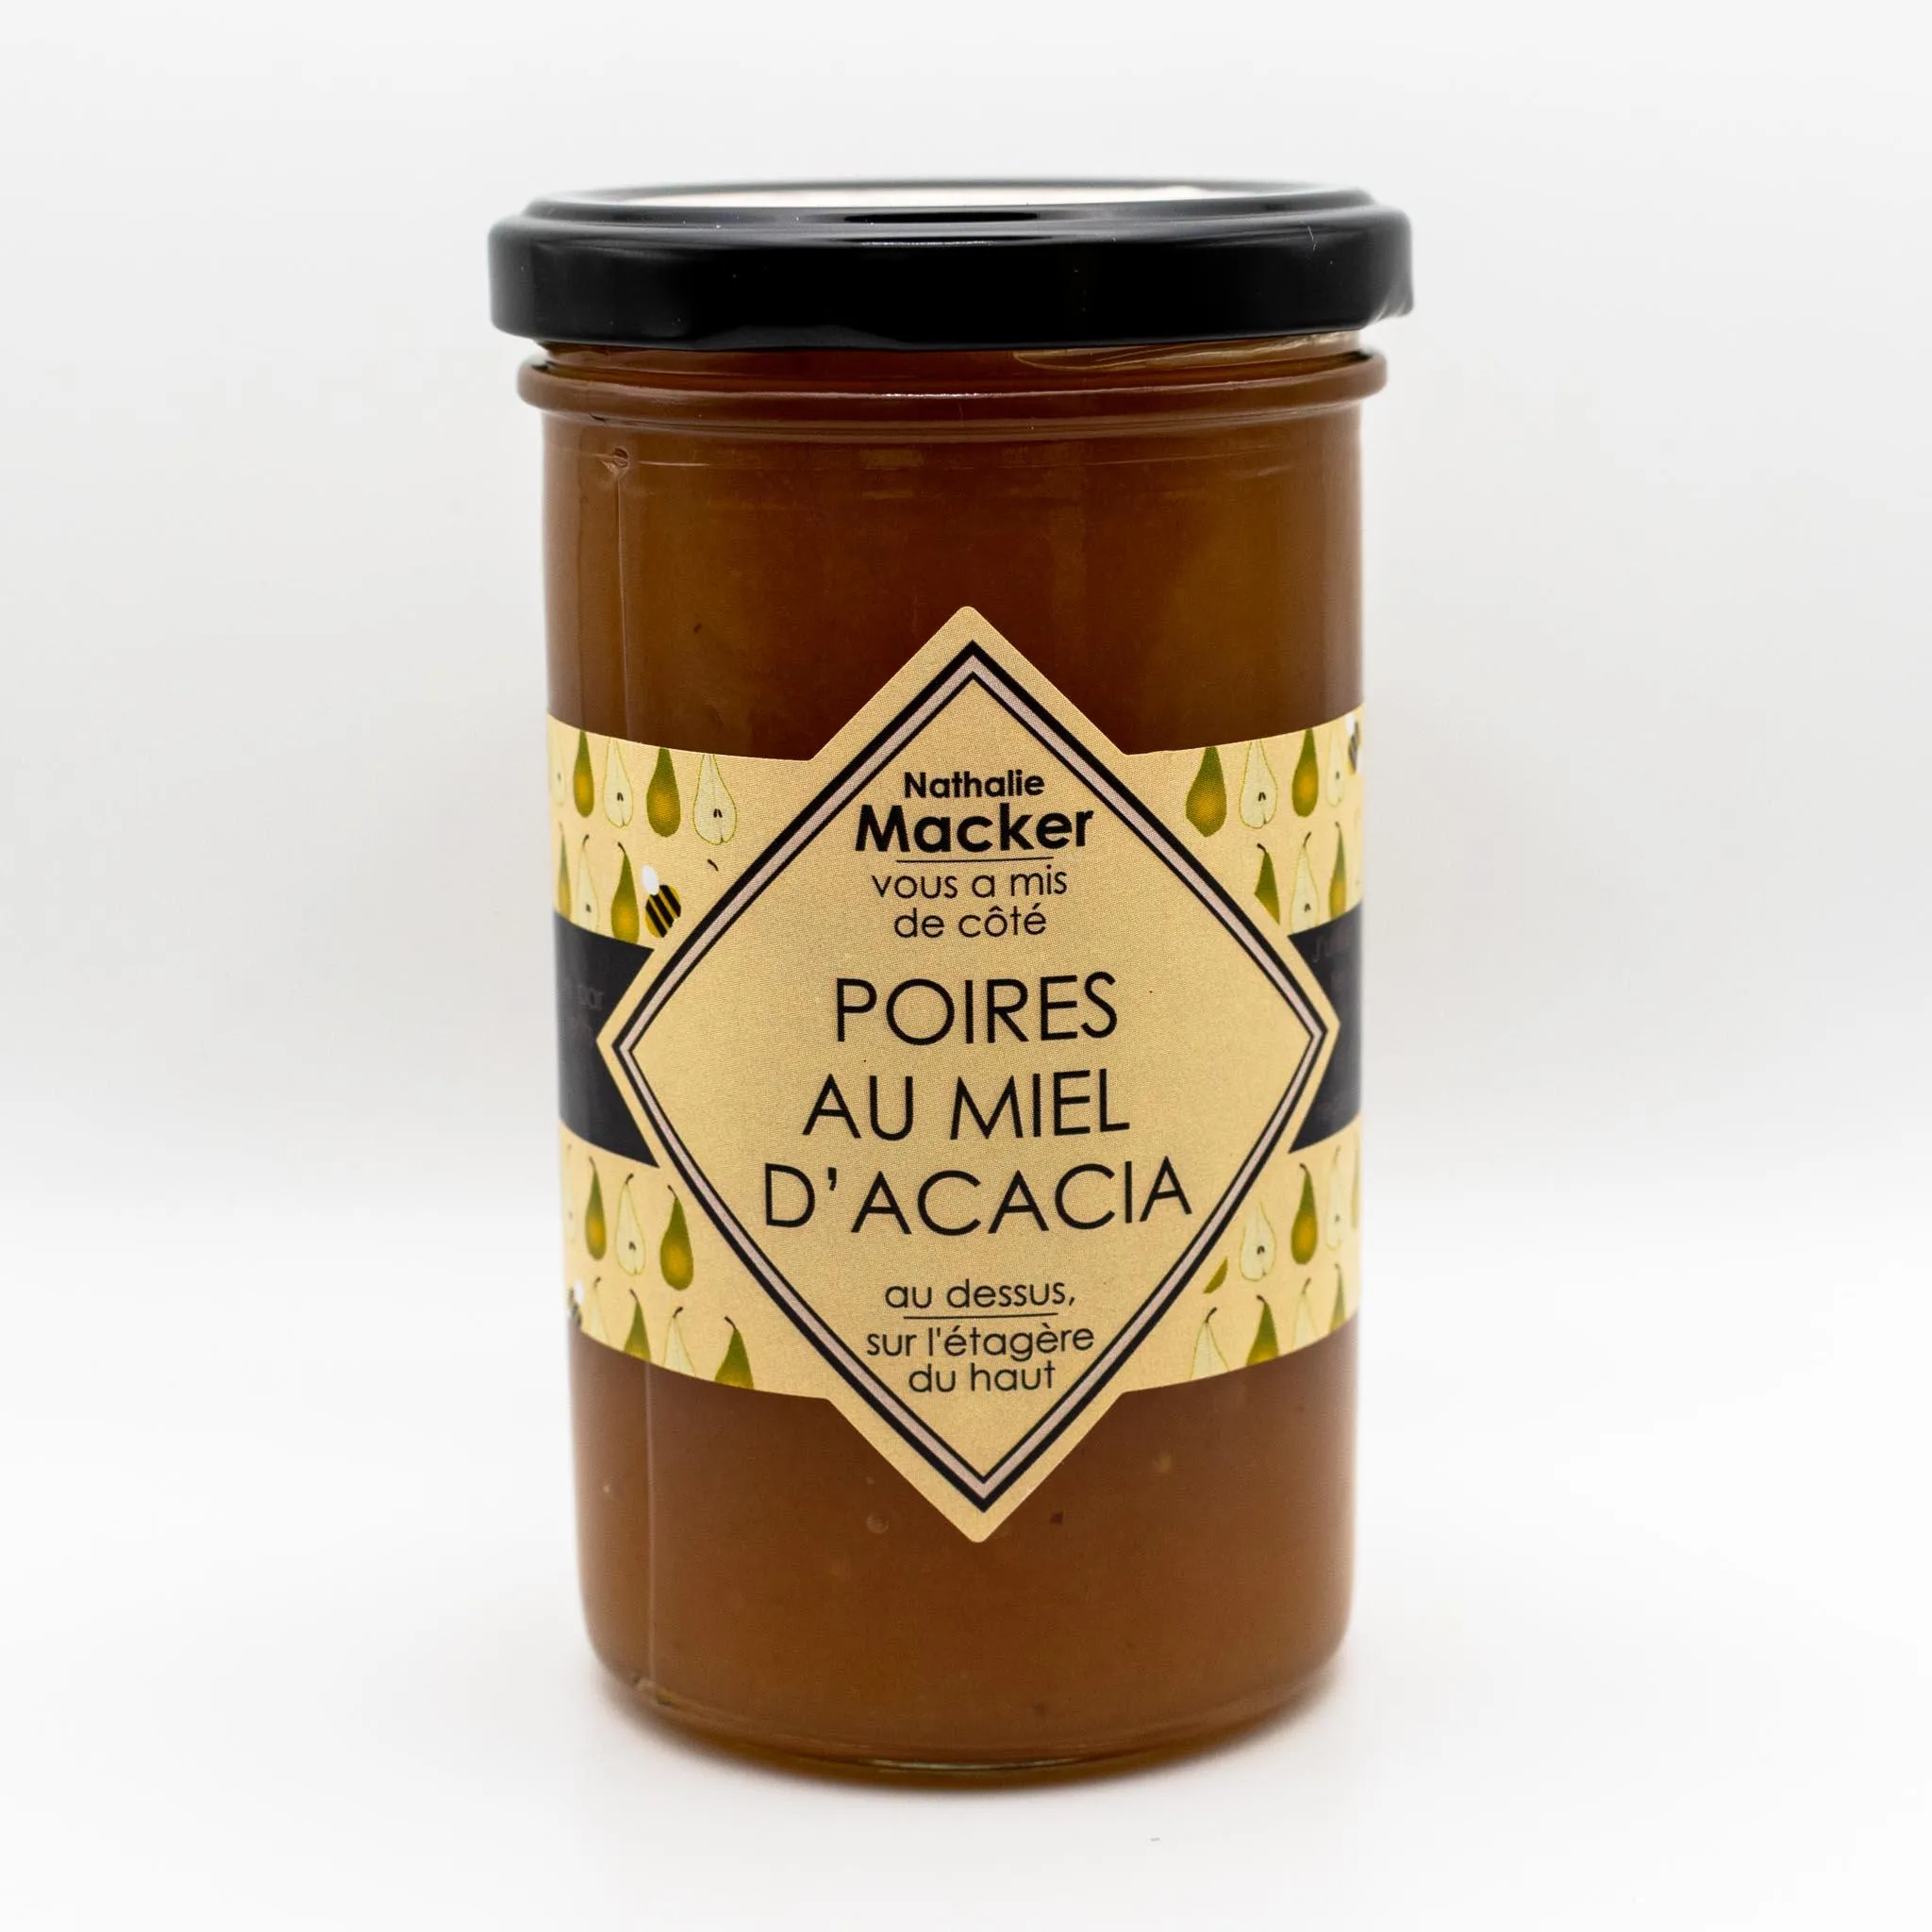 La confiture de poires au miel d'acacia